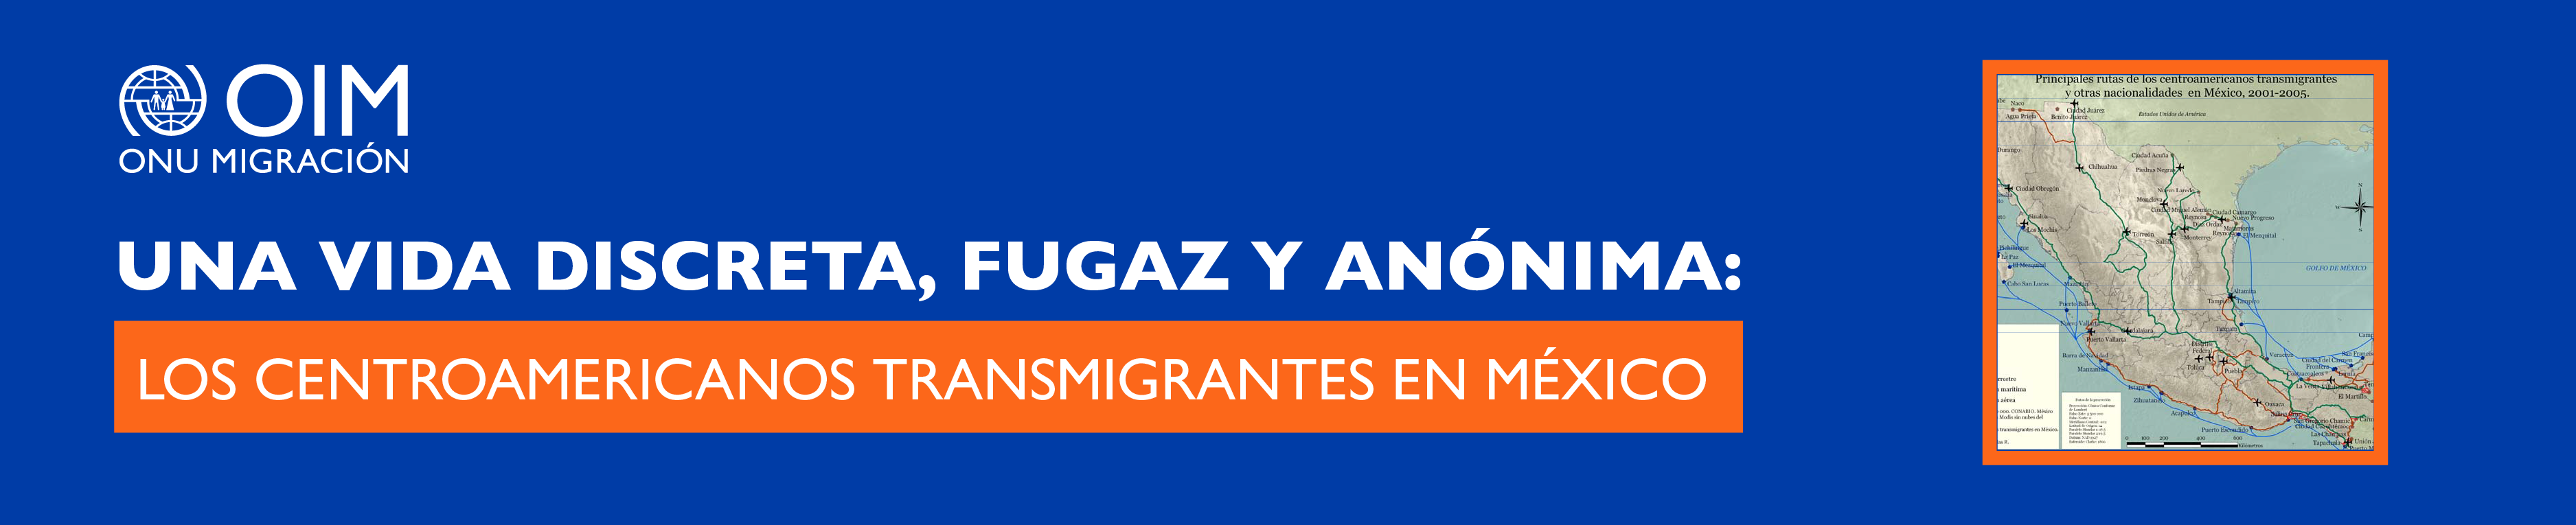 Una vida discreta, fugaz y anónima: los centroamericanos transmigrantes en México